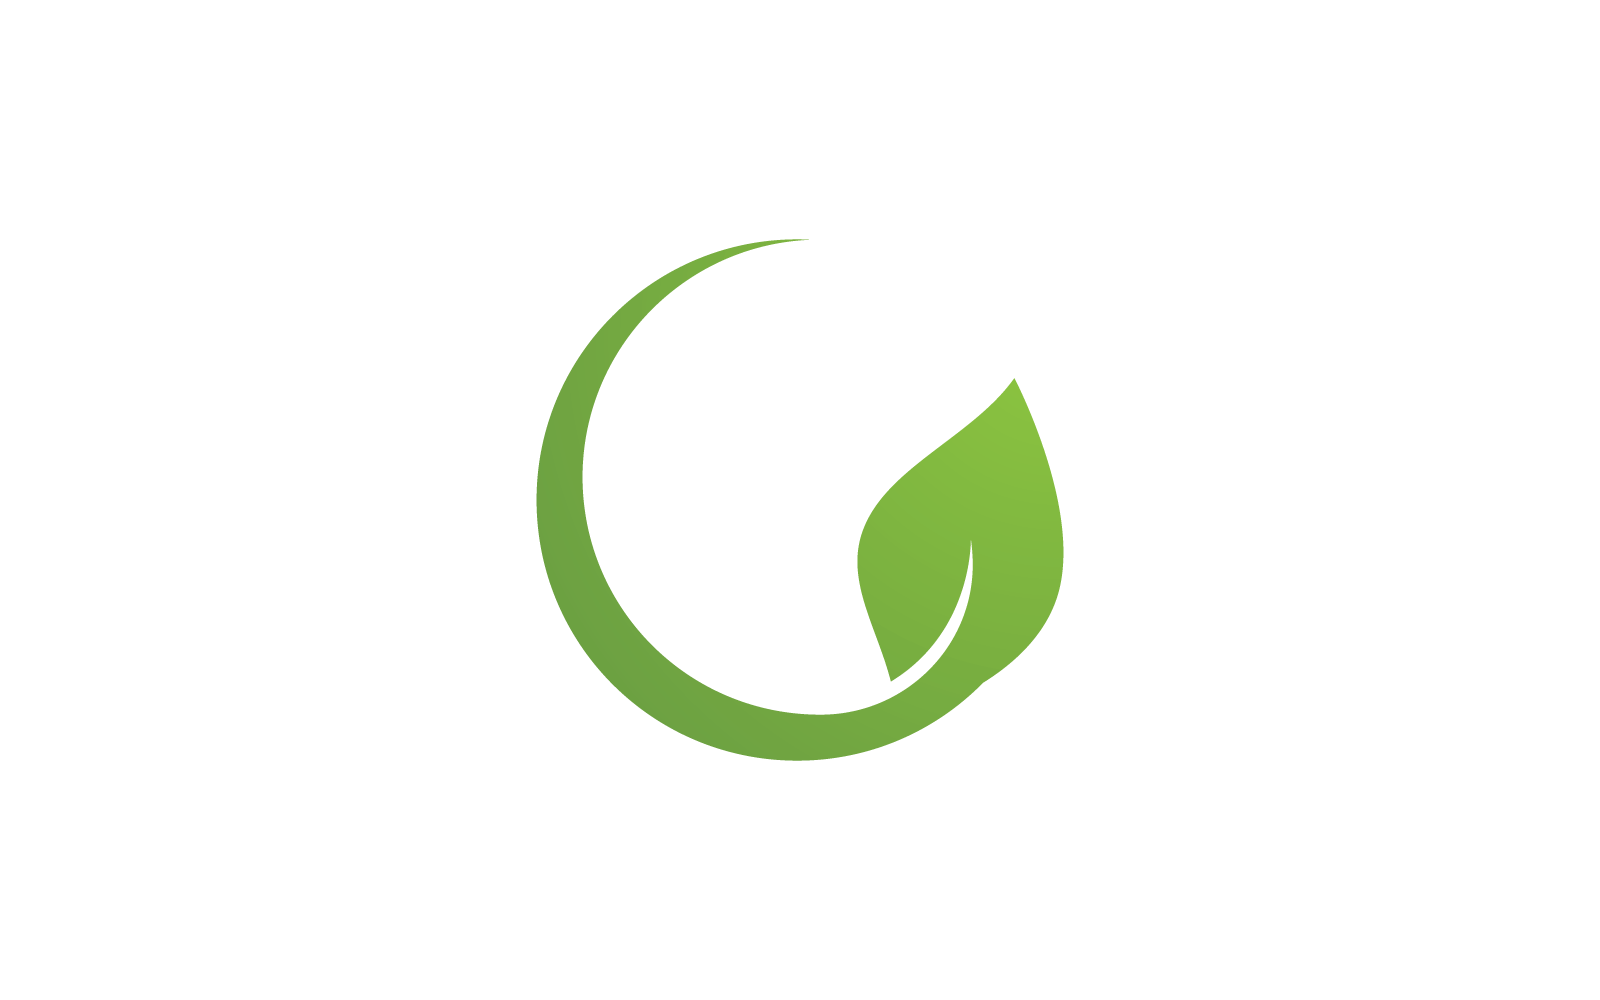 Eco green leaf logo illustration nature flat design Logo Template